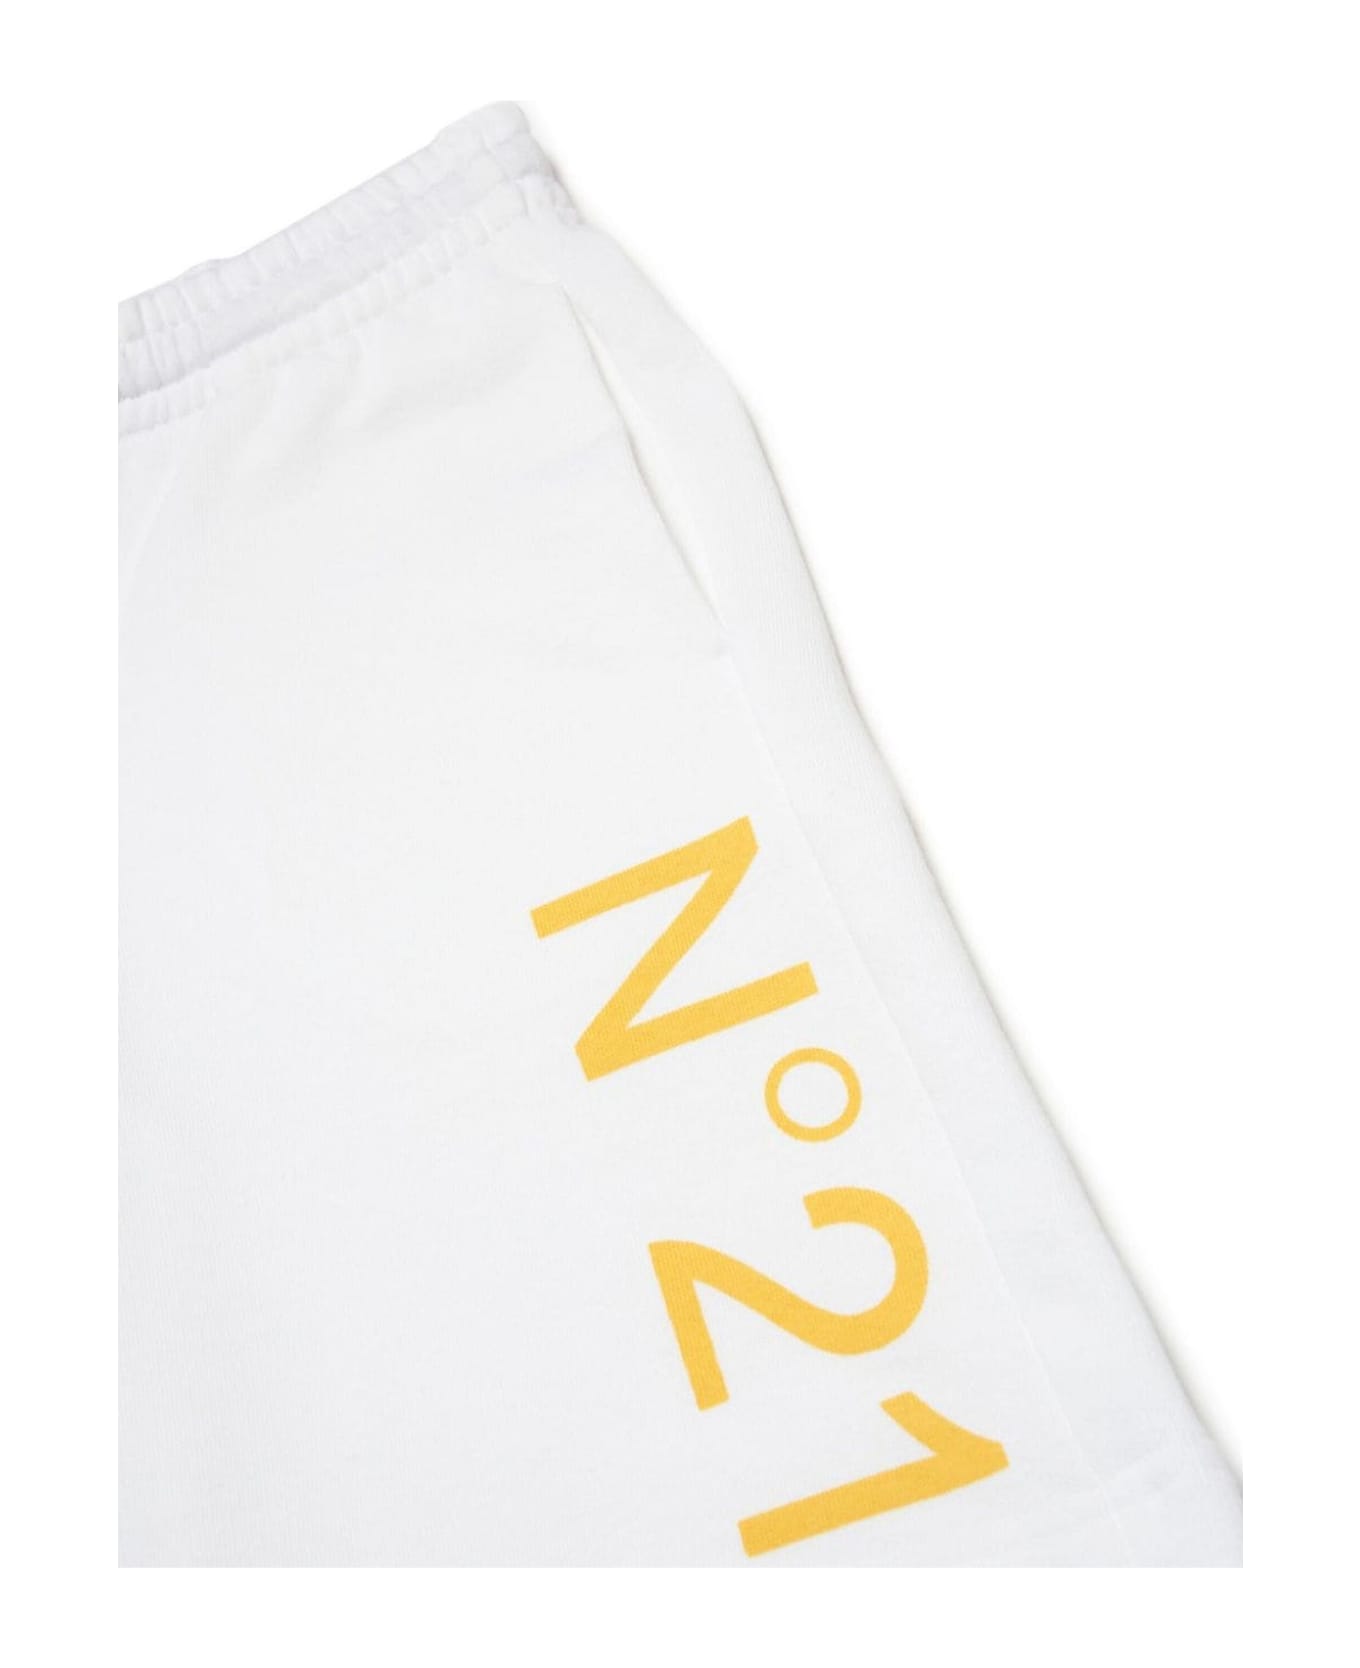 N.21 N°21 Shorts White - White